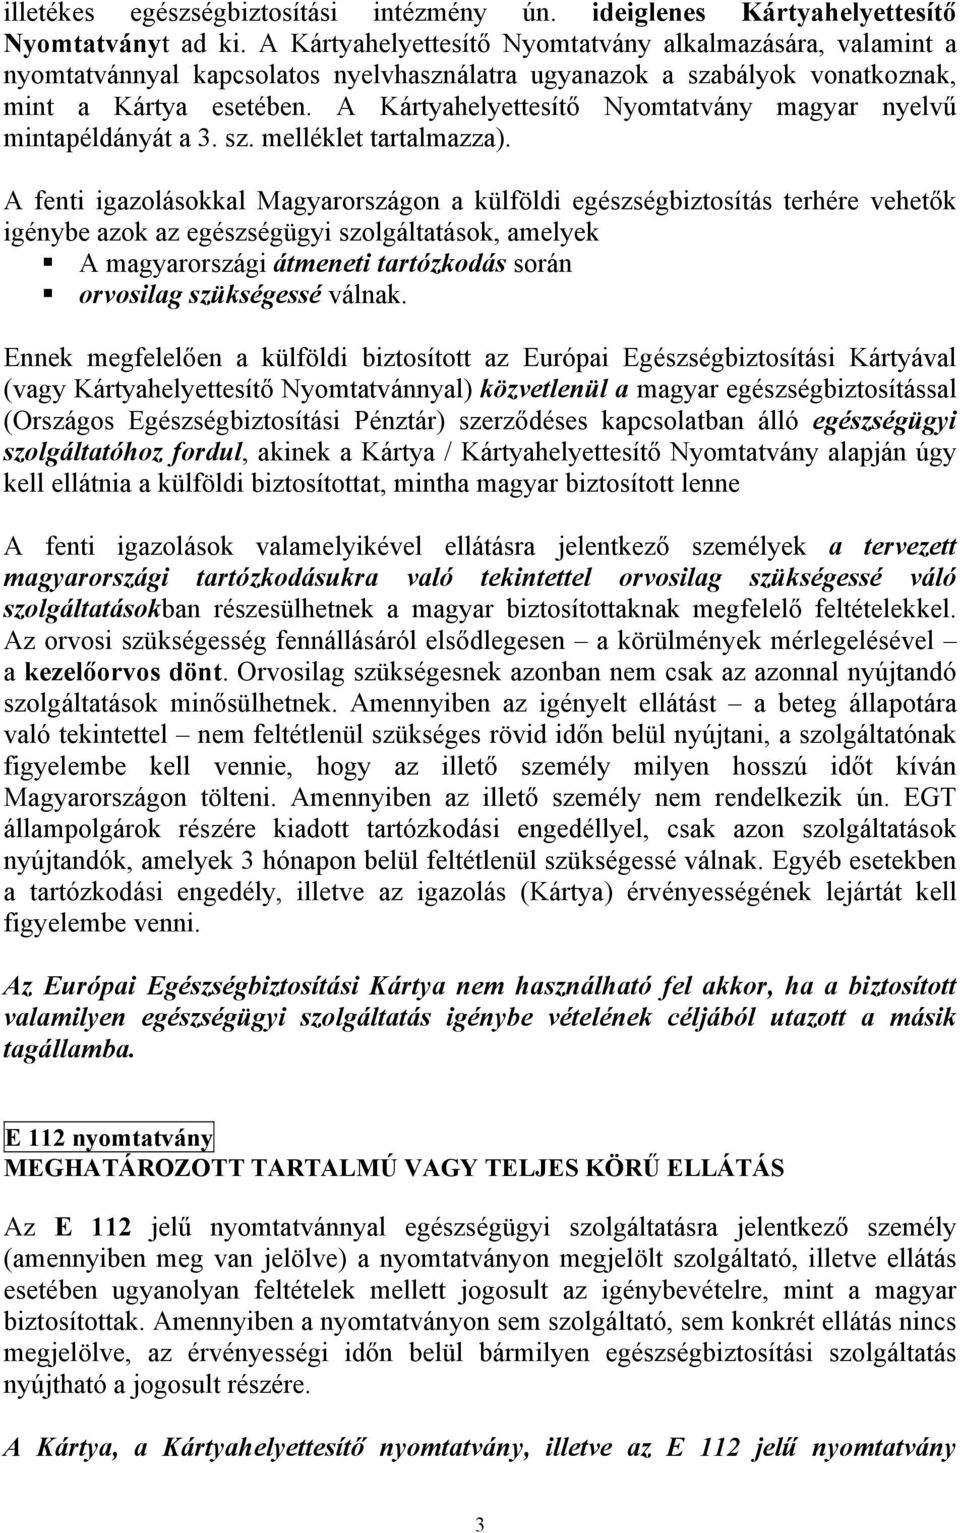 A Kártyahelyettesítő Nyomtatvány magyar nyelvű mintapéldányát a 3. sz. melléklet tartalmazza).